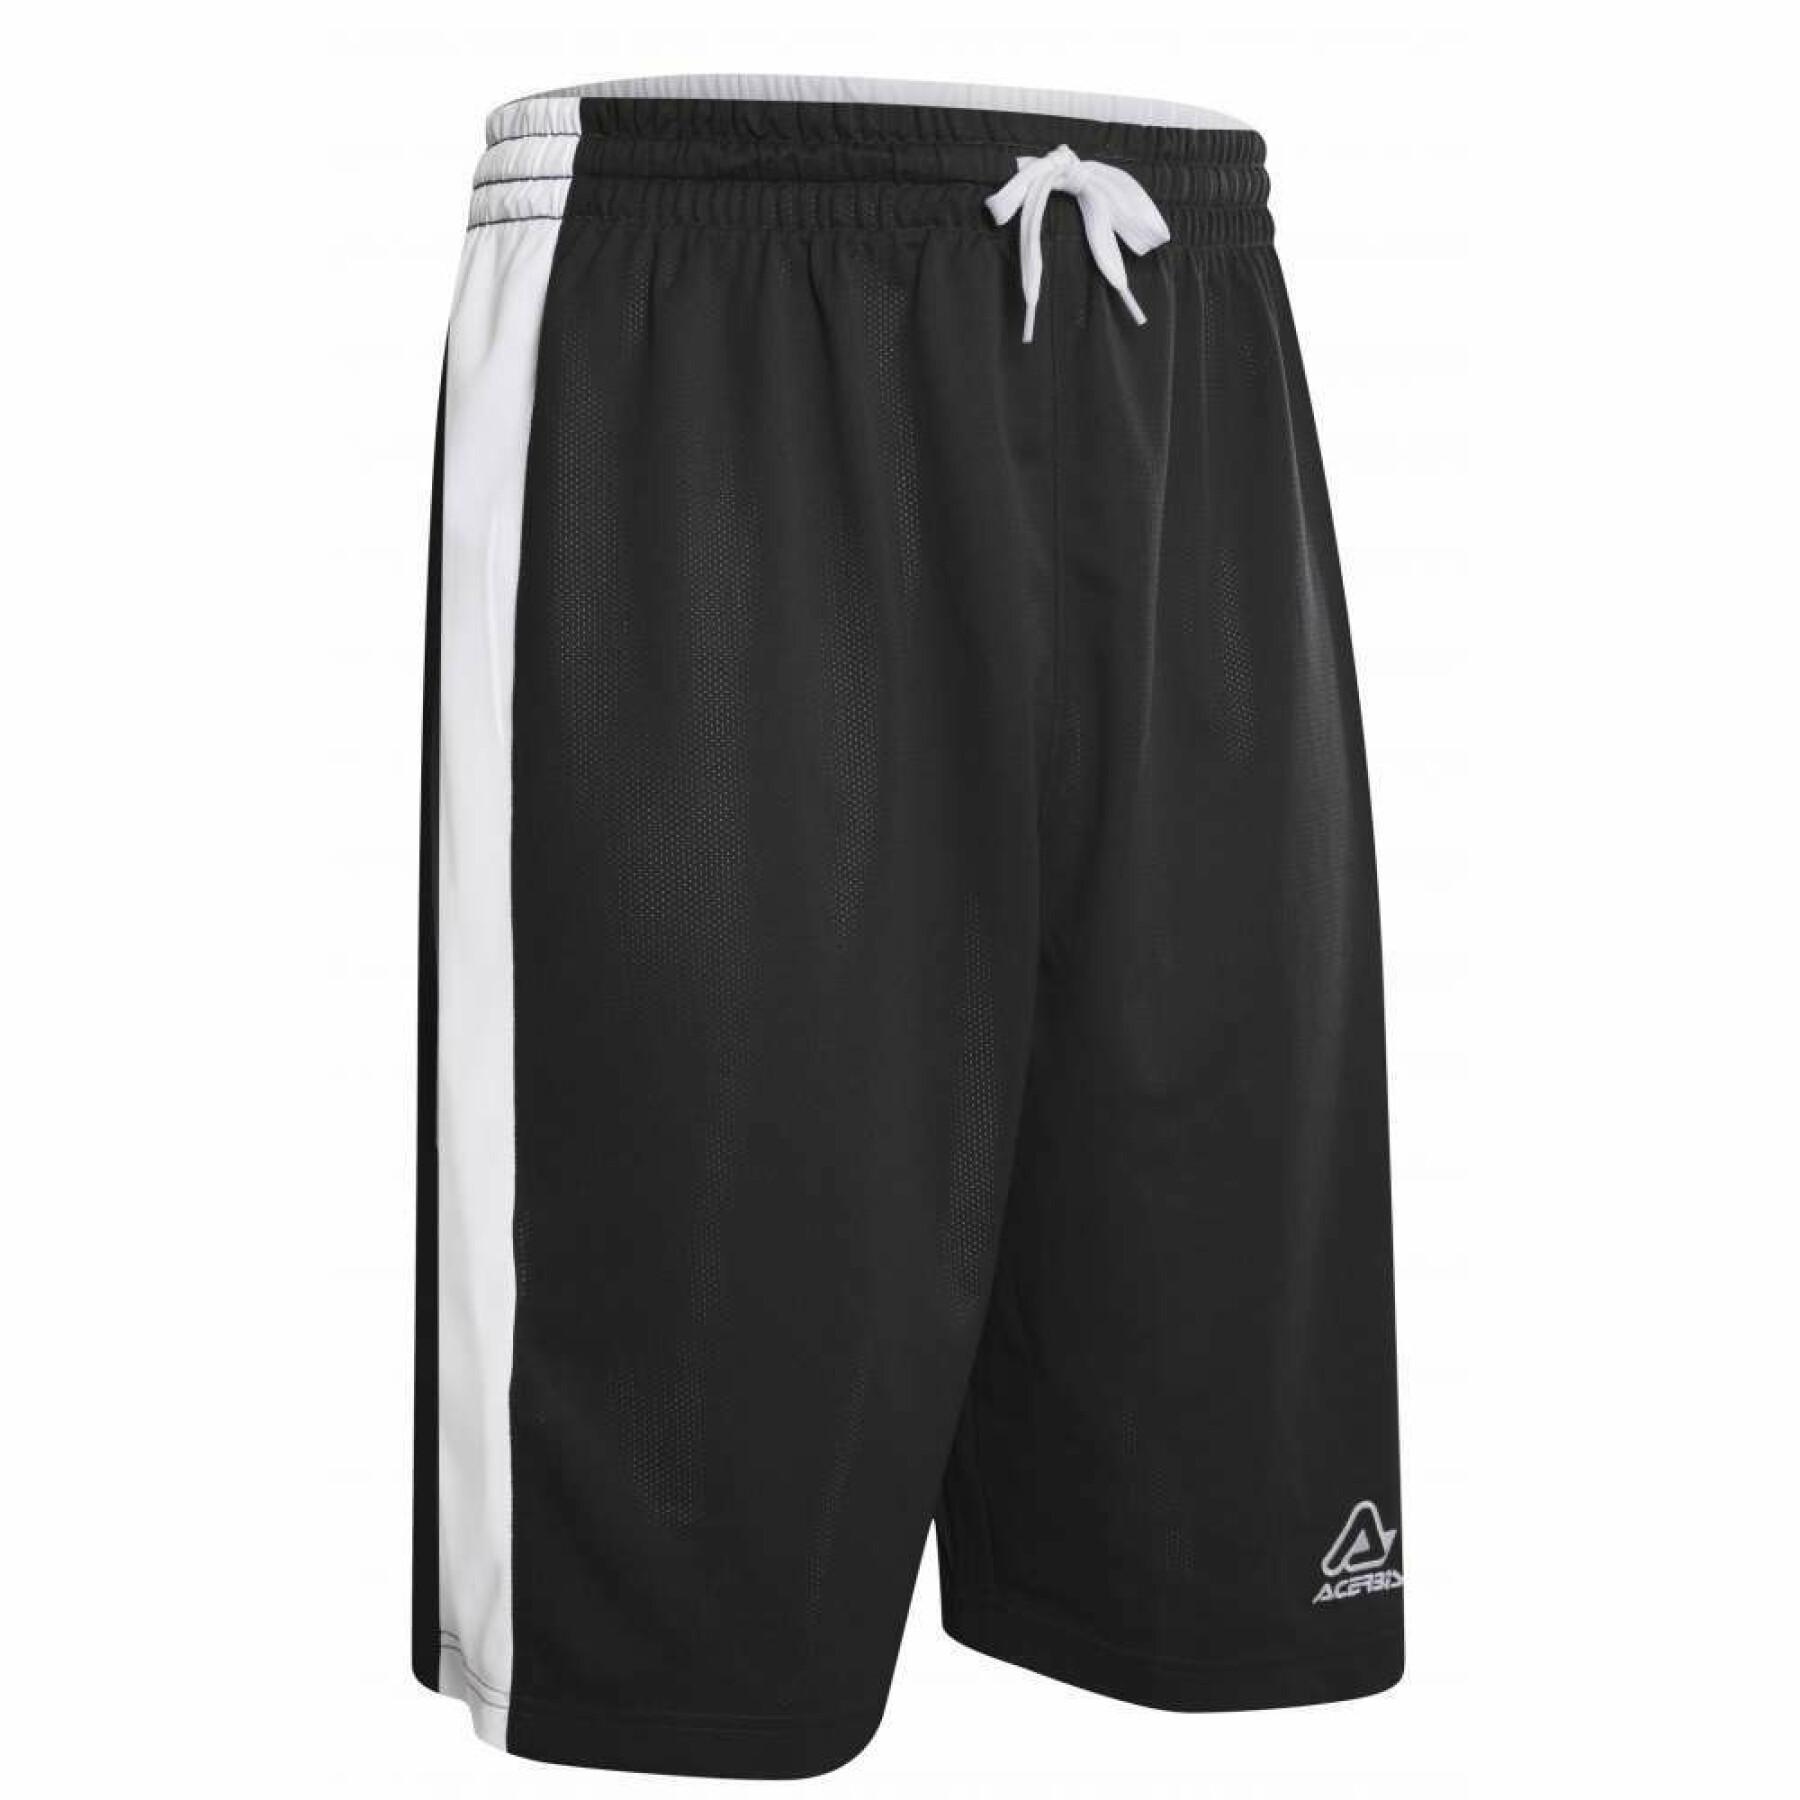 Reversible shorts Acerbis Larry